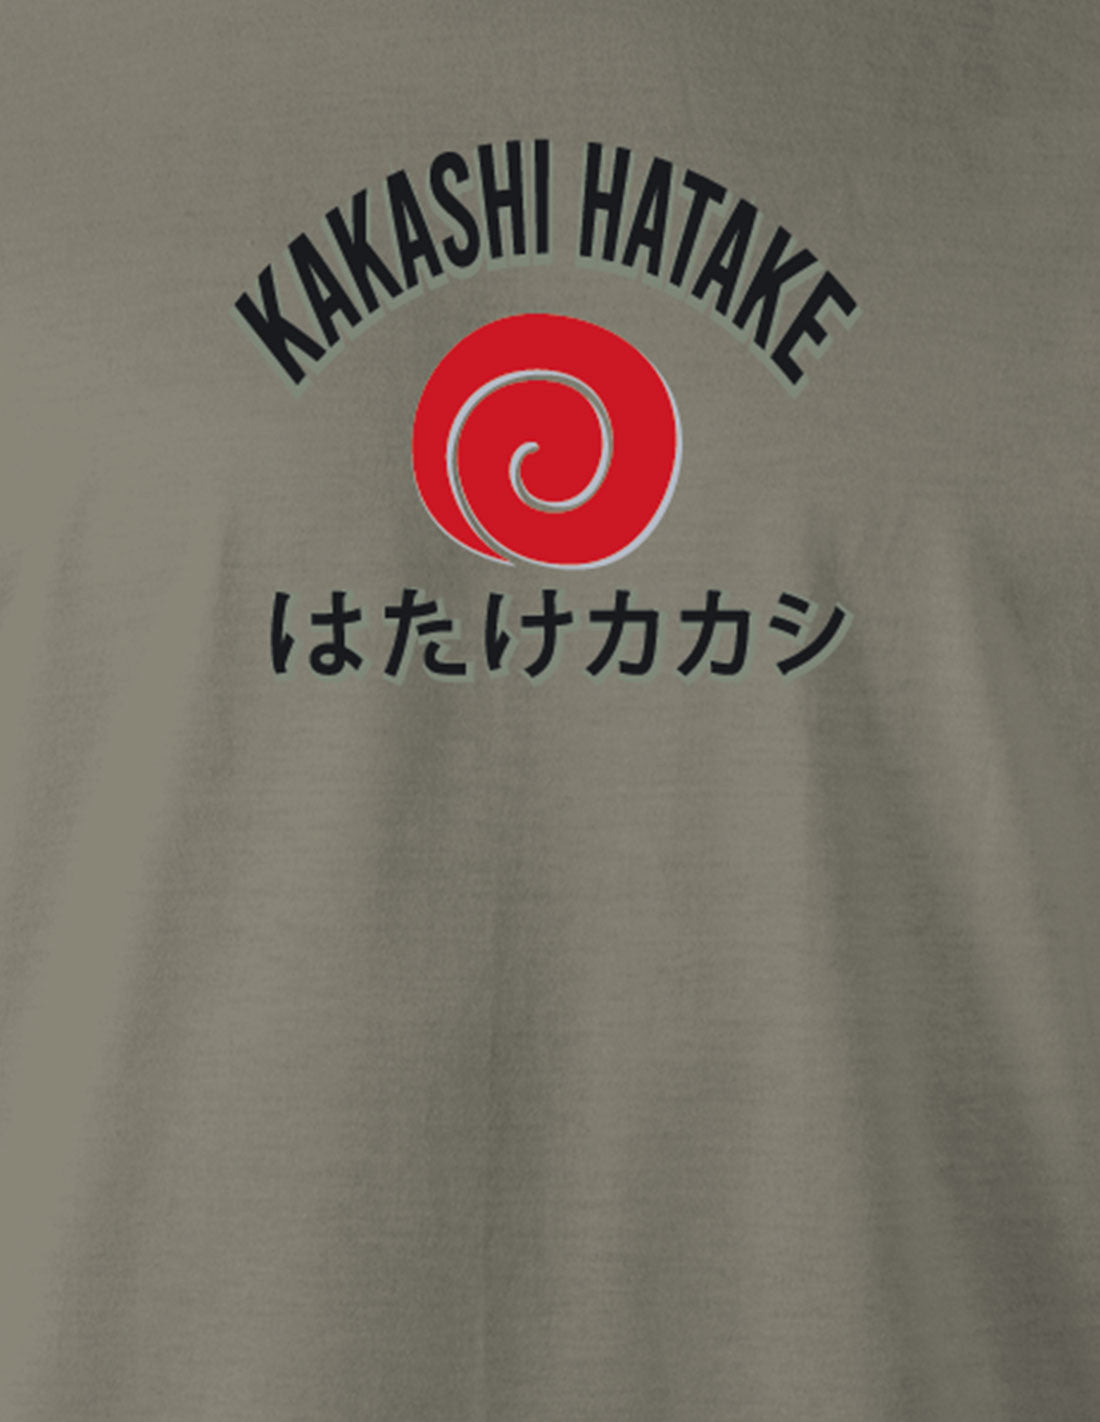 T-shirt Naruto - Shinobi of Konohagakure